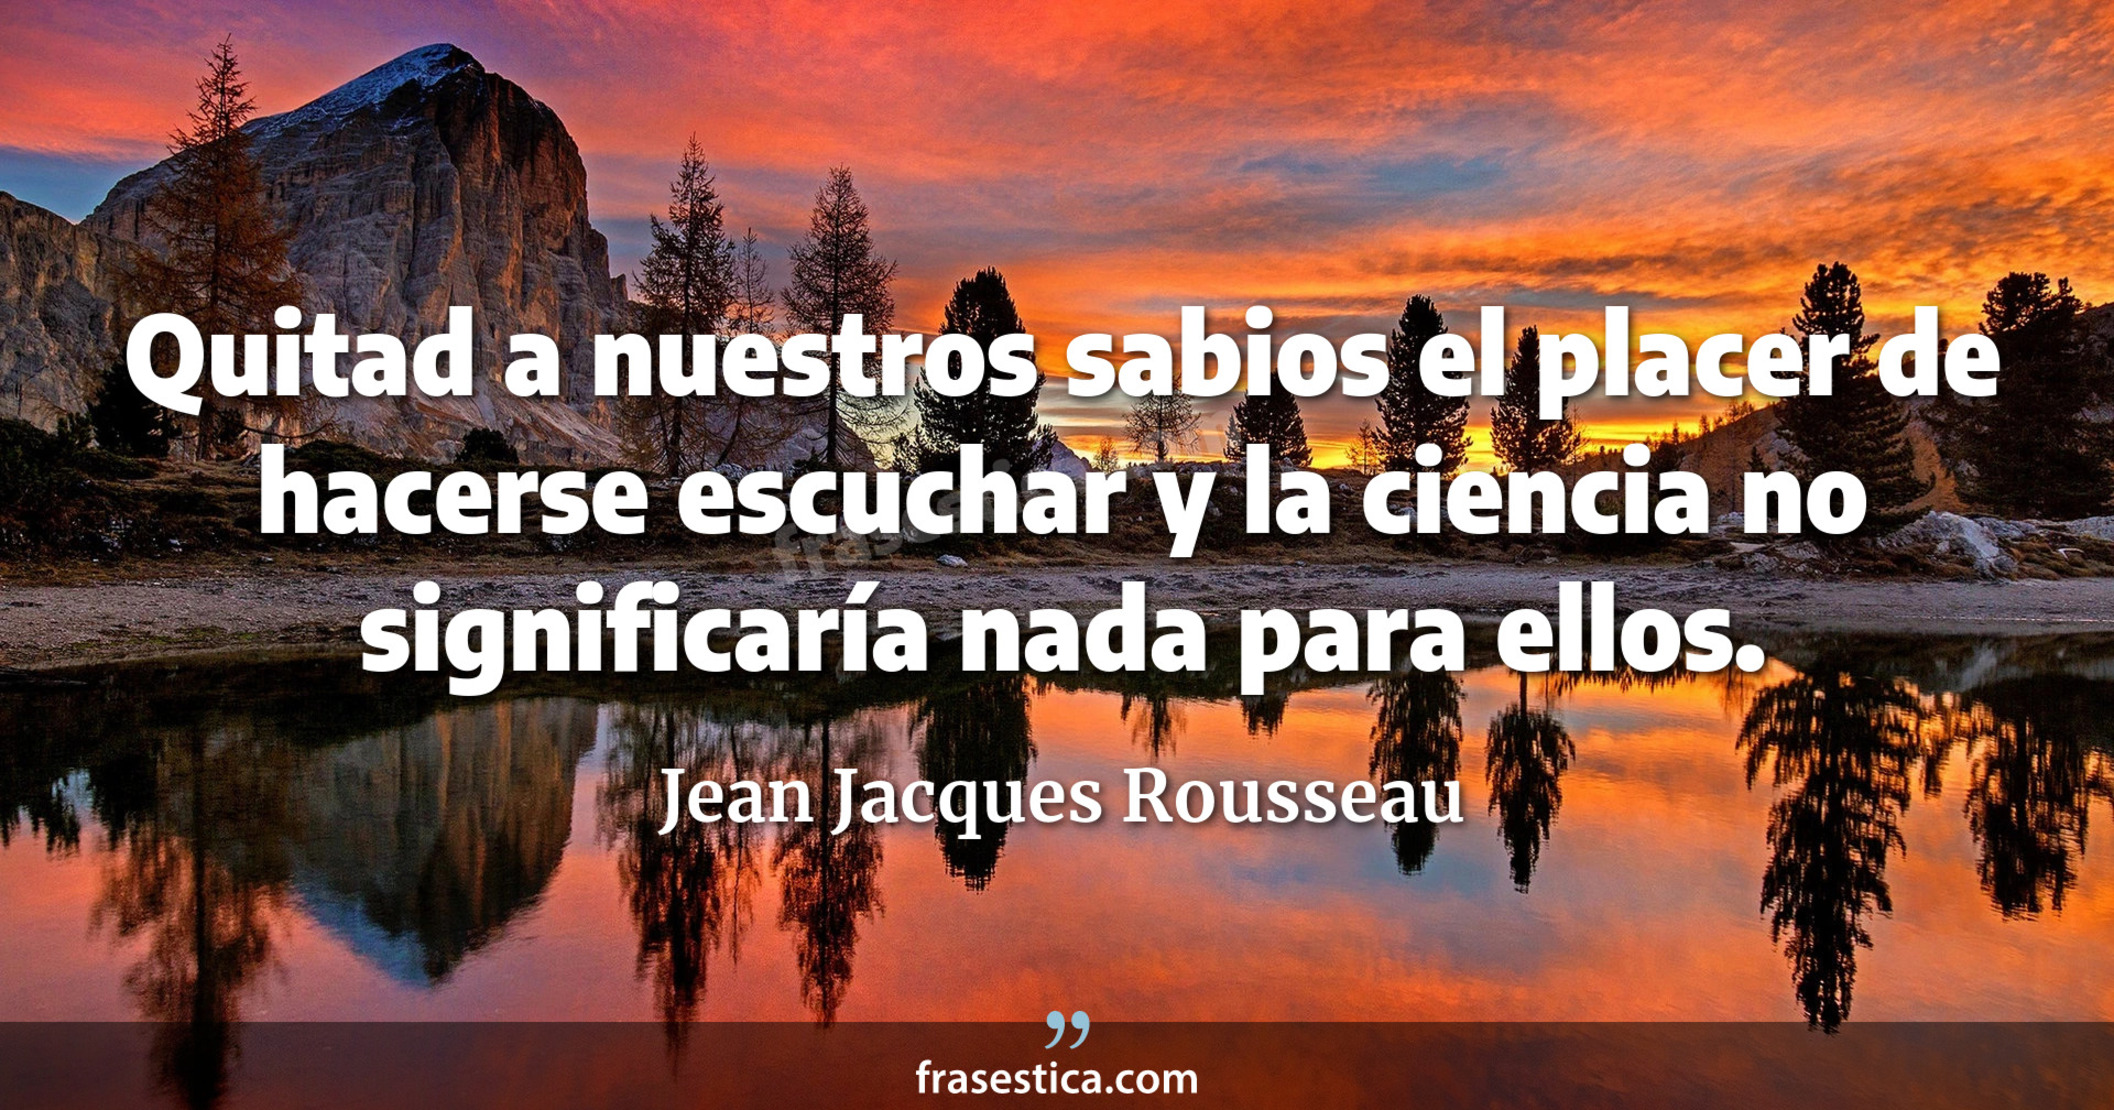 Quitad a nuestros sabios el placer de hacerse escuchar y la ciencia no significaría nada para ellos. - Jean Jacques Rousseau